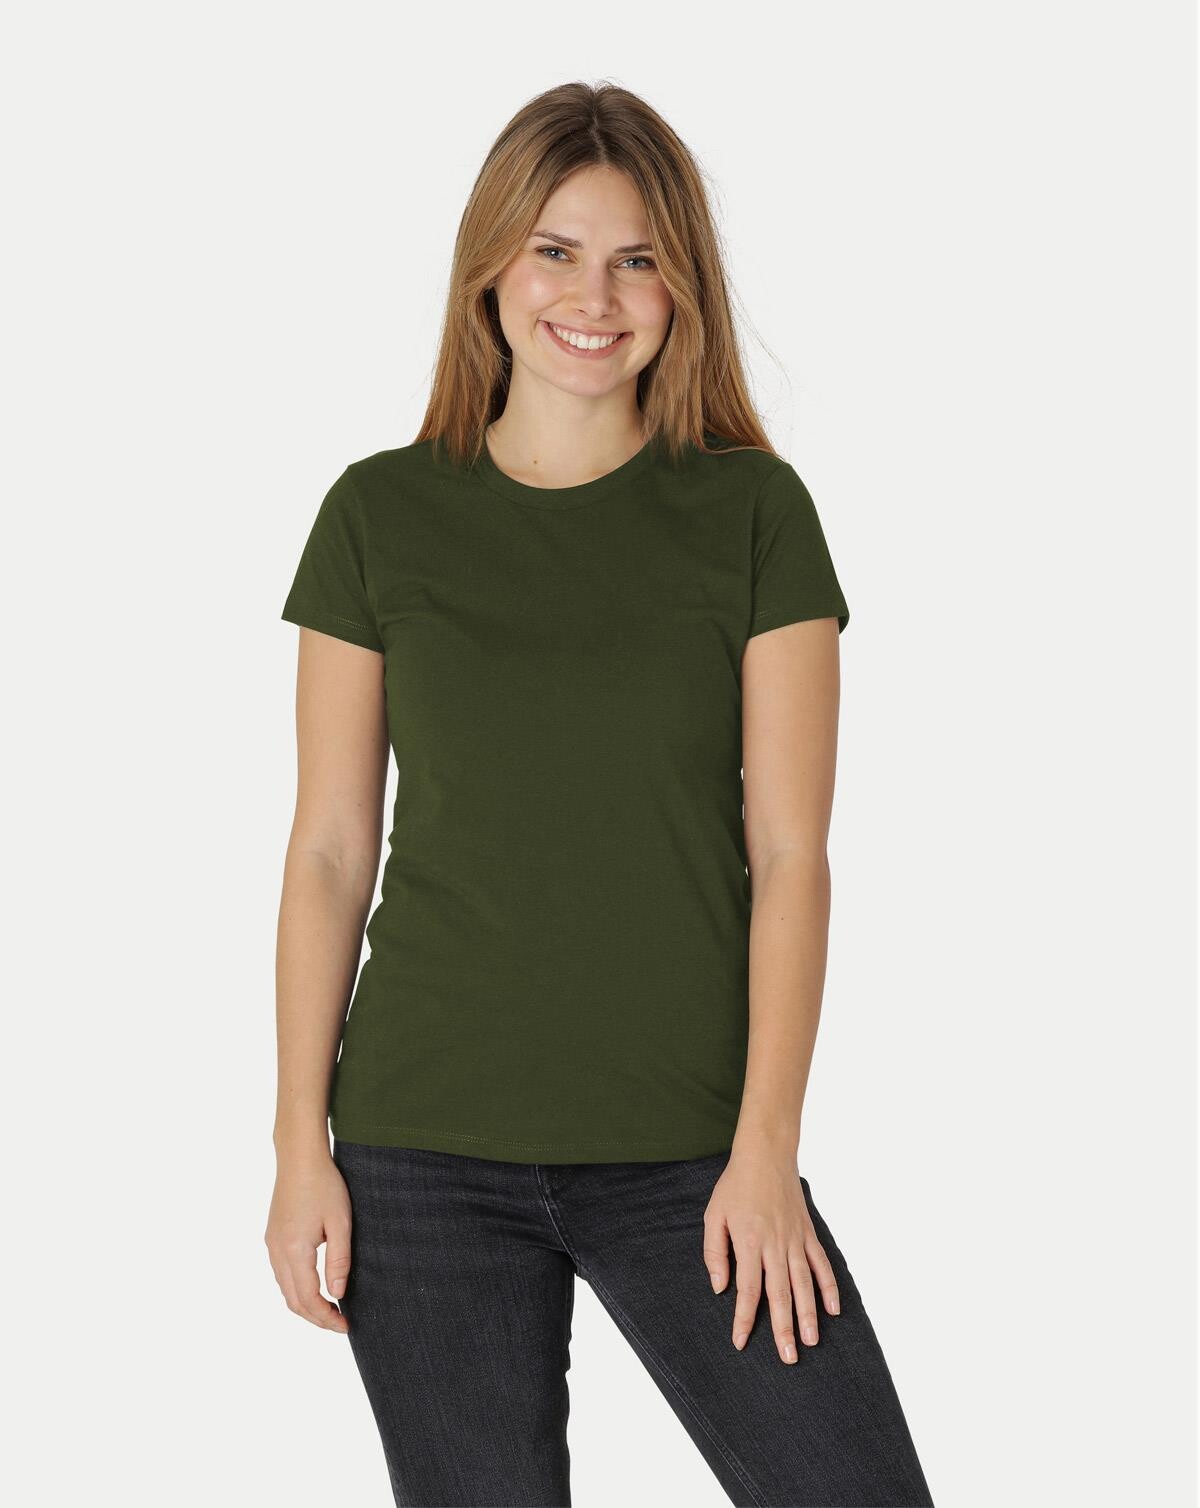 Neutral Økologisk Dame Tætsiddende T-Shirt (Oliven, M)